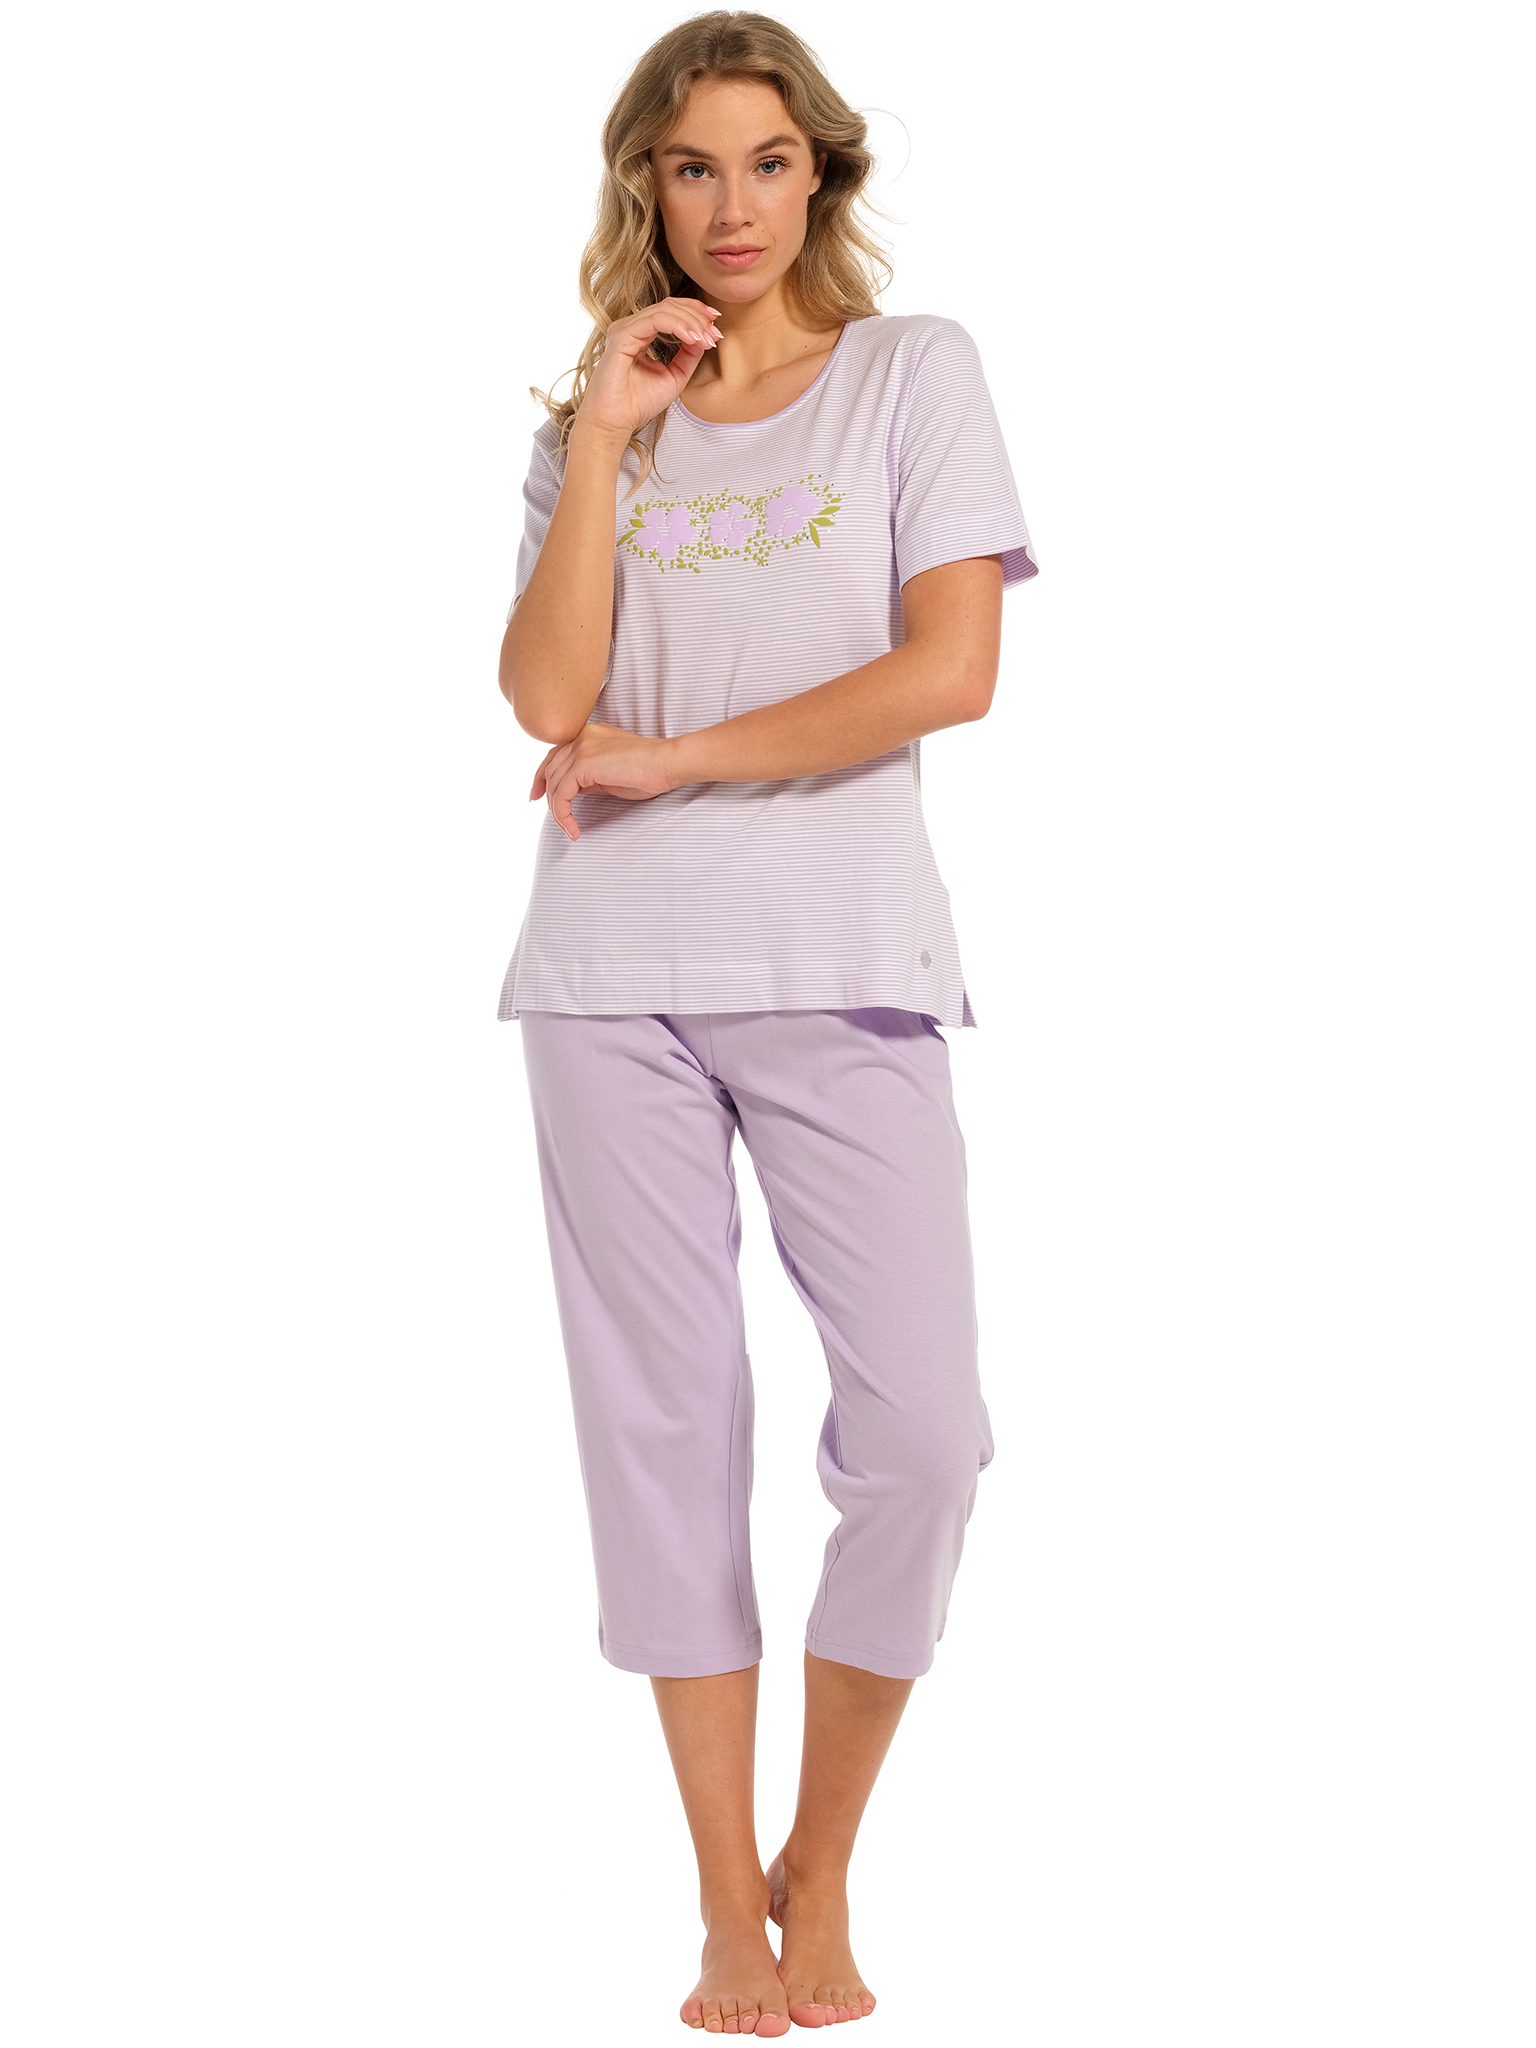 Pastunette - Blossoms - Dames Pyjamaset - Paars - Katoen - Maat 38